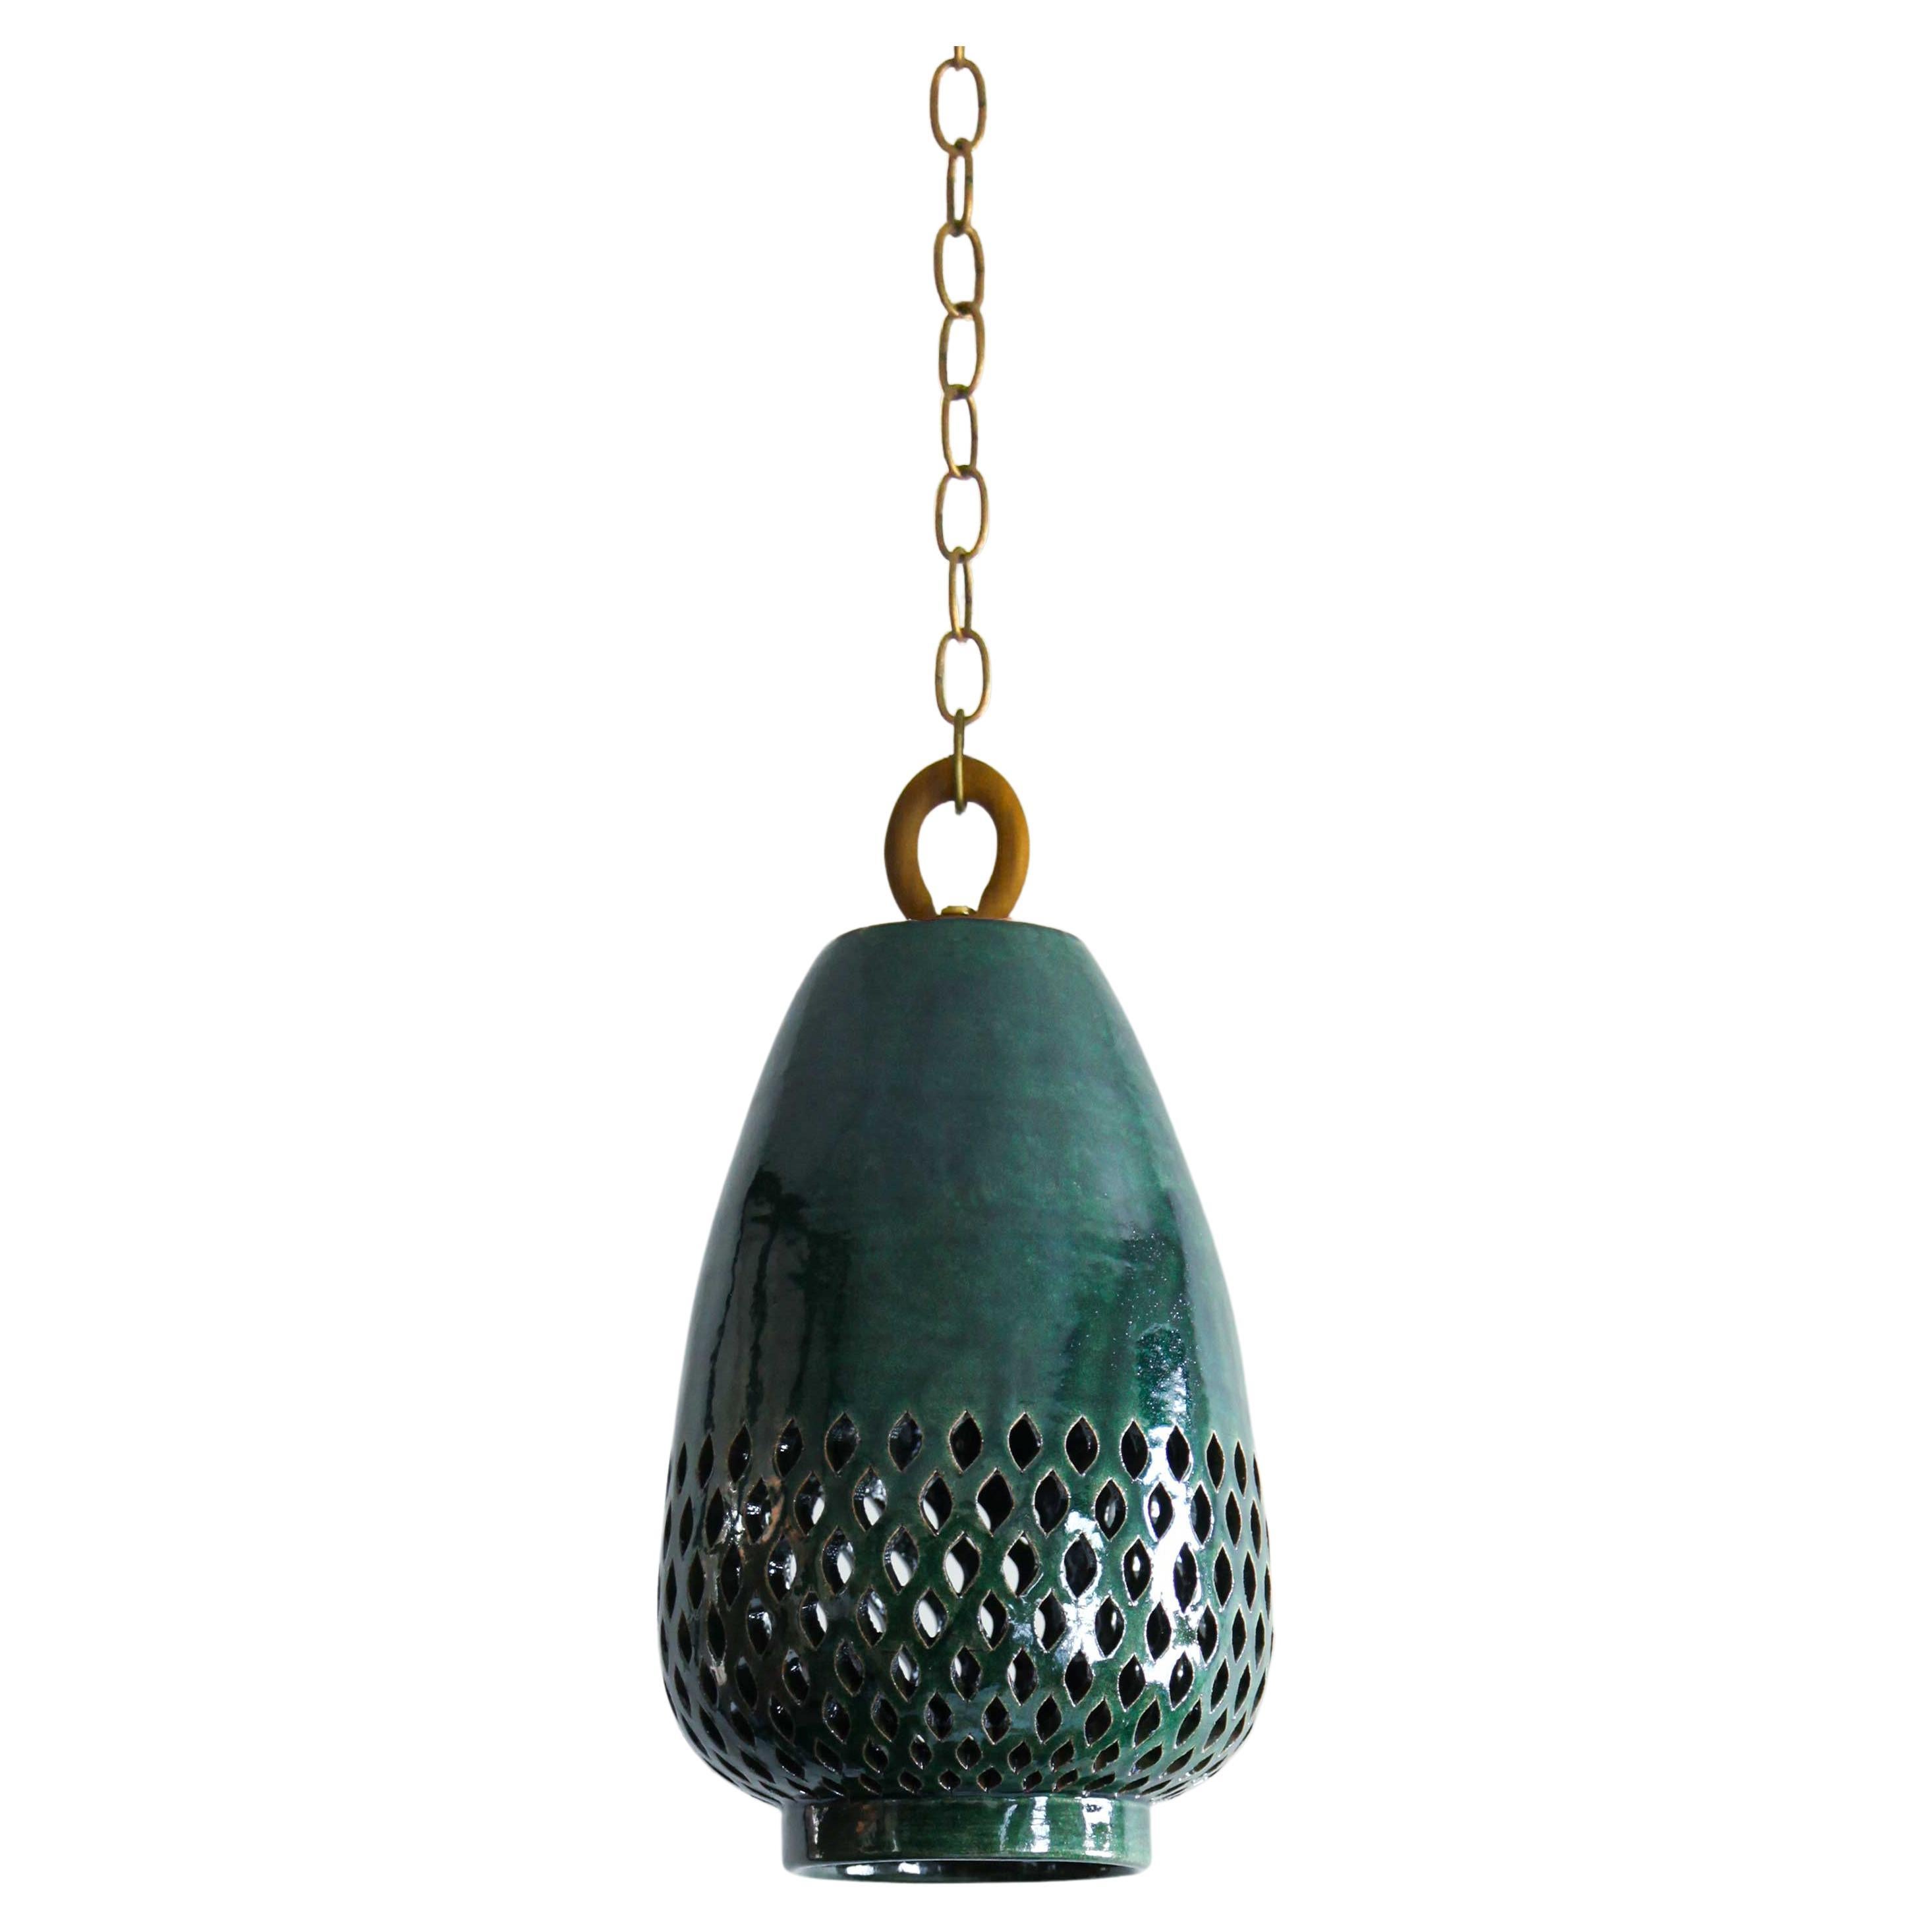 Petite lampe à suspension en céramique émeraude, laiton naturel, diamants, collection Atzompa